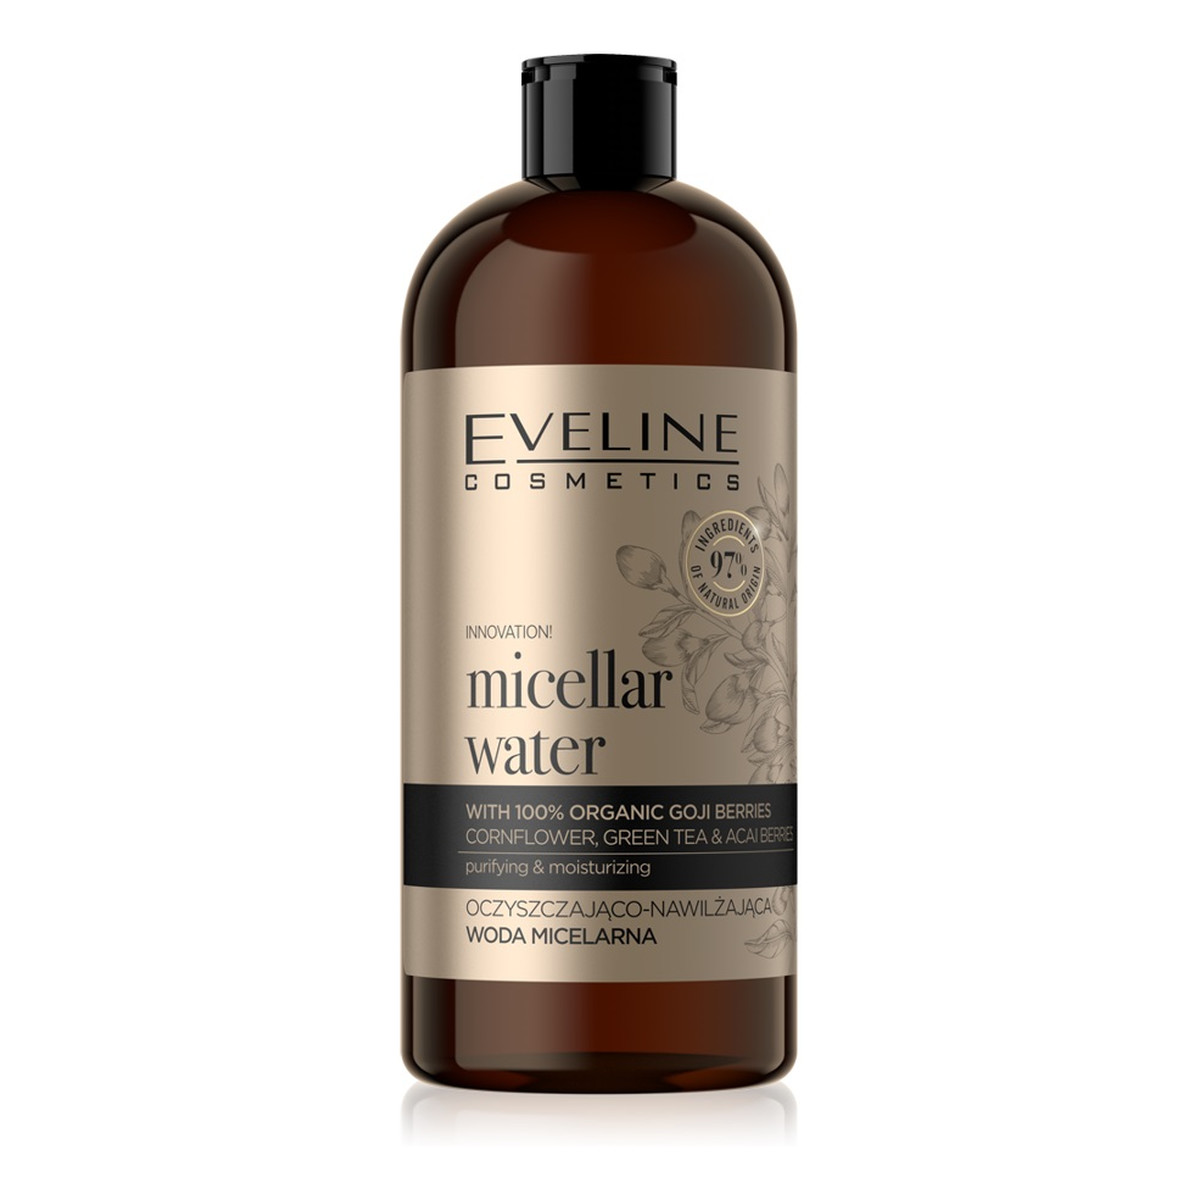 Eveline Organic Gold Micellar Water oczyszczająco-nawilżająca Woda micelarna 500ml